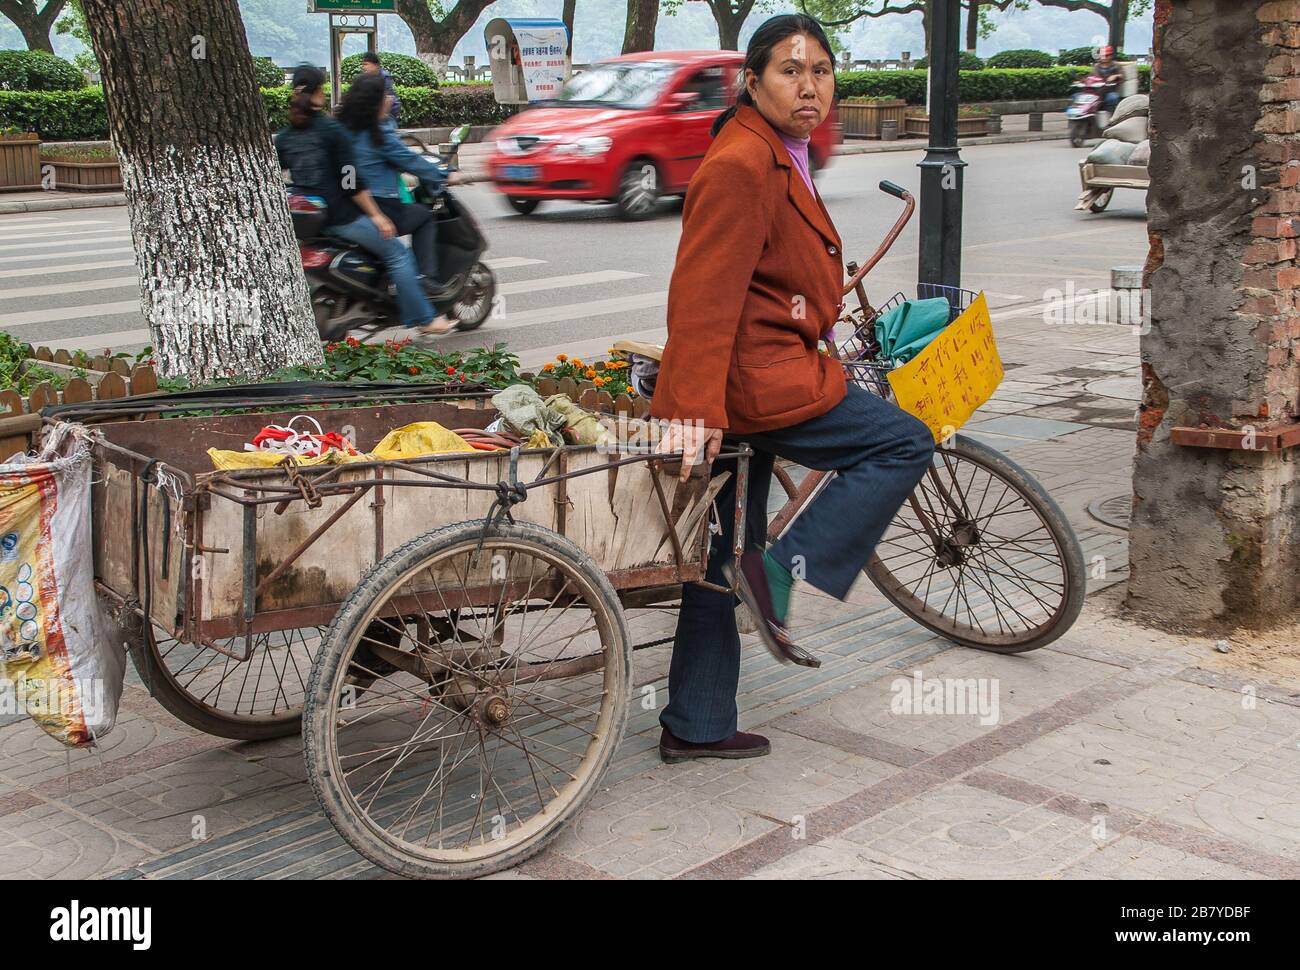 Guilin, Chine - 11 mai 2010: Centre-ville. Femme est debout avec tricycle de transport avec un grand département de chargement sur le côté de la rue. Banque D'Images